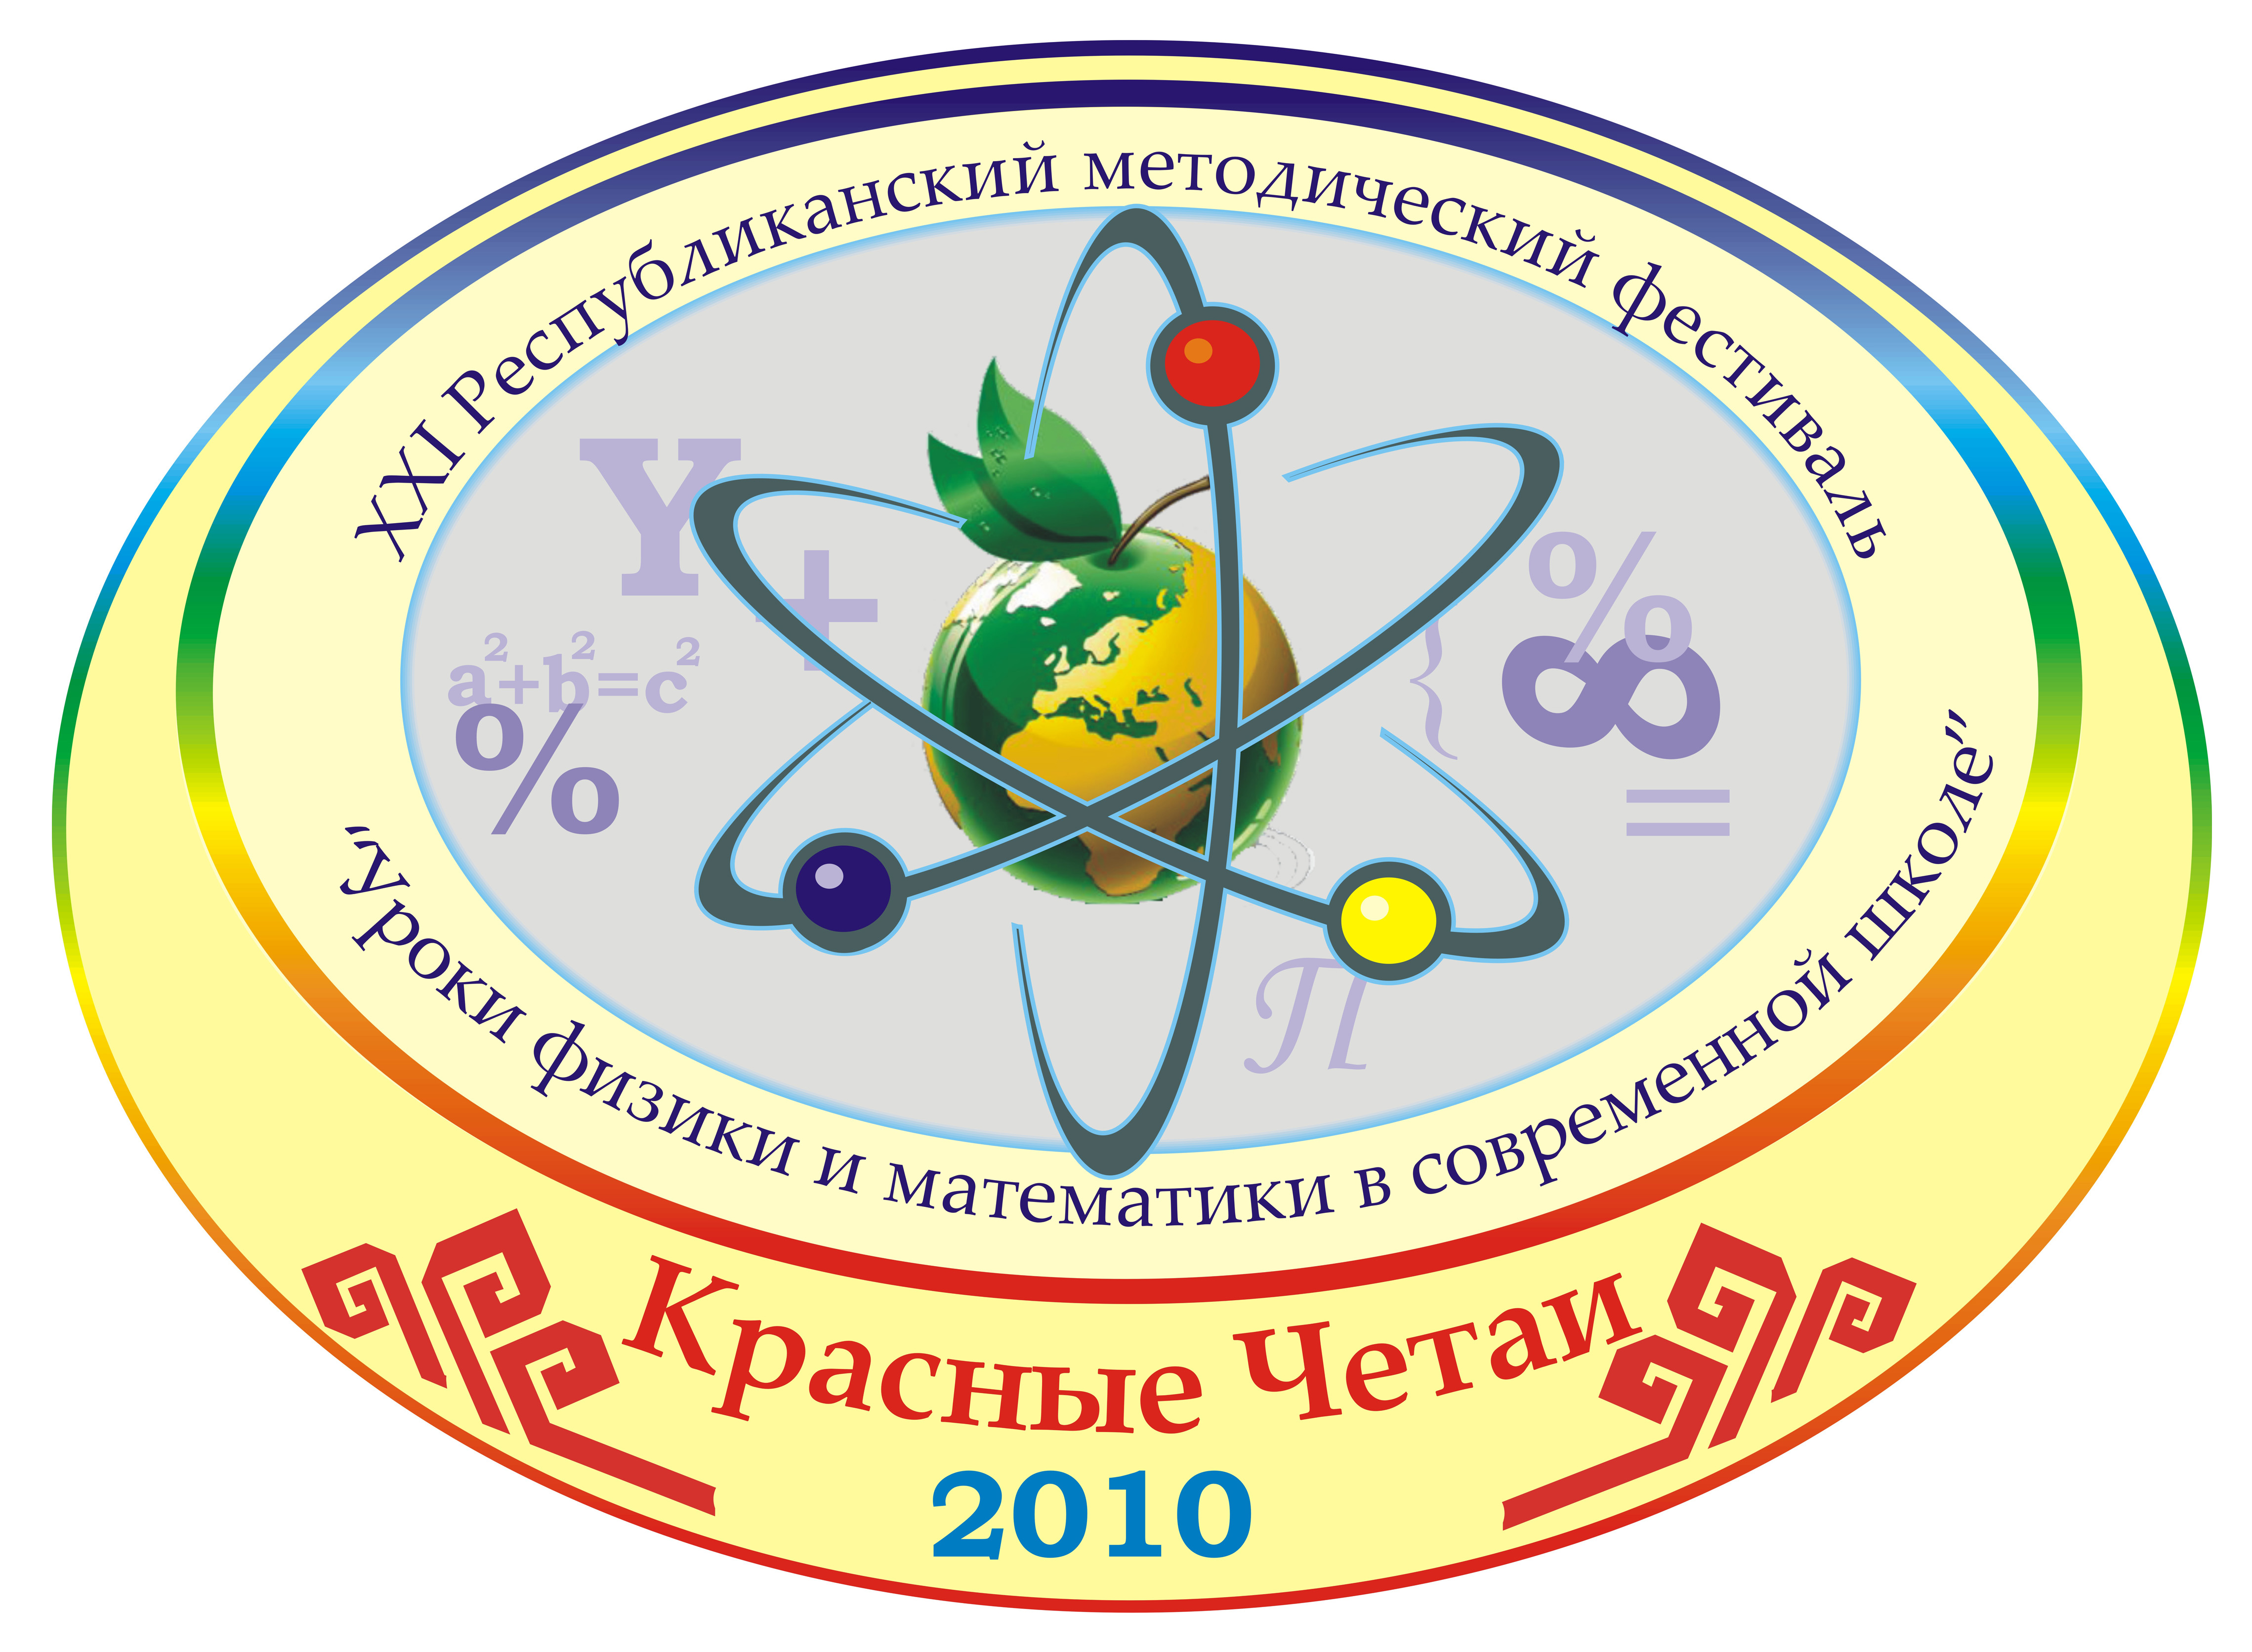 Фестиваль учителей физики и математики имеет эмблему